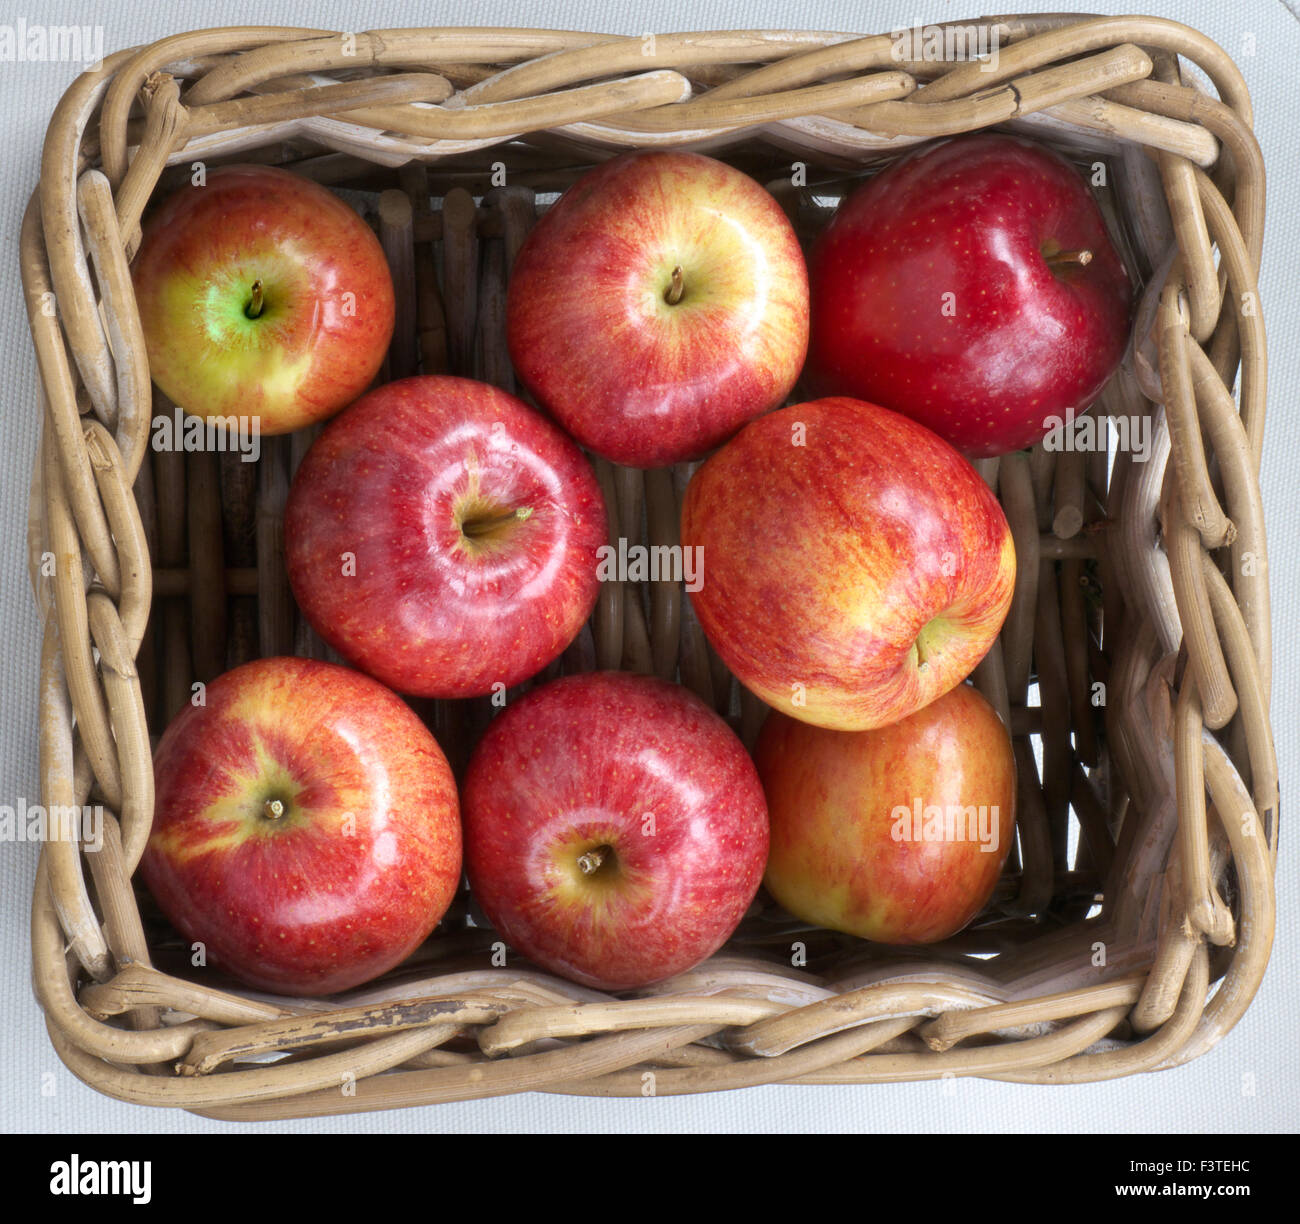 Perfekte unmarkierte glänzende süße Gala Äpfel im Hofladen Weidenkorb auf dem Display zu verkaufen Stockfoto